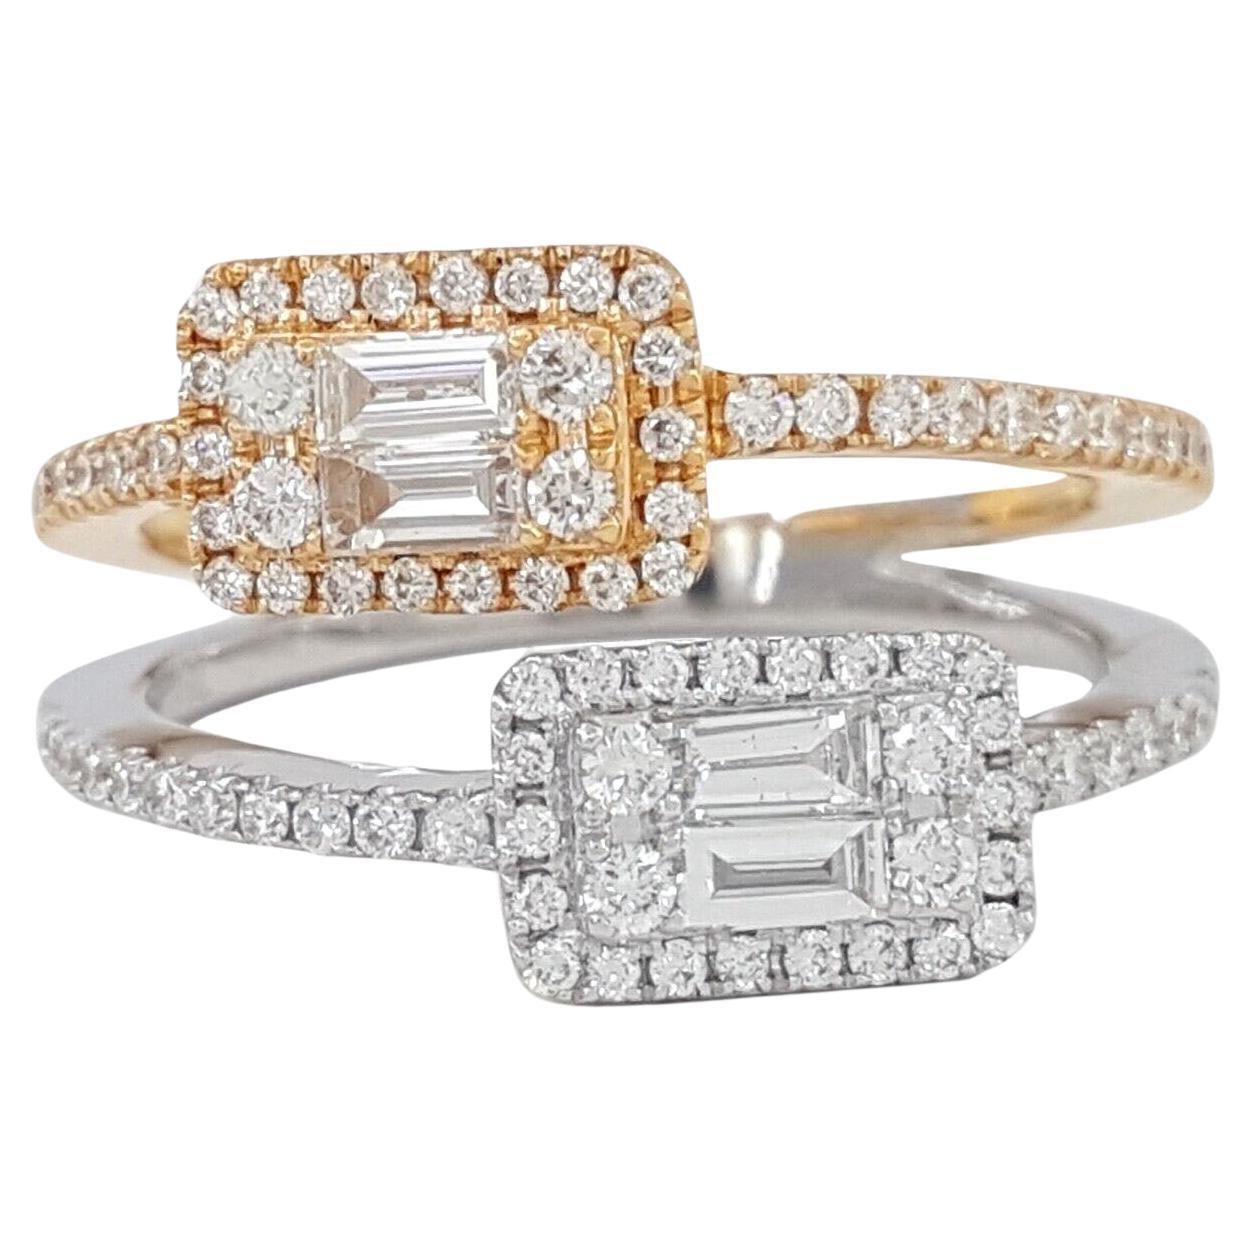 Bague en or rose et blanc 18 carats avec diamant baguette et diamant rond brillant de type "by-pass".